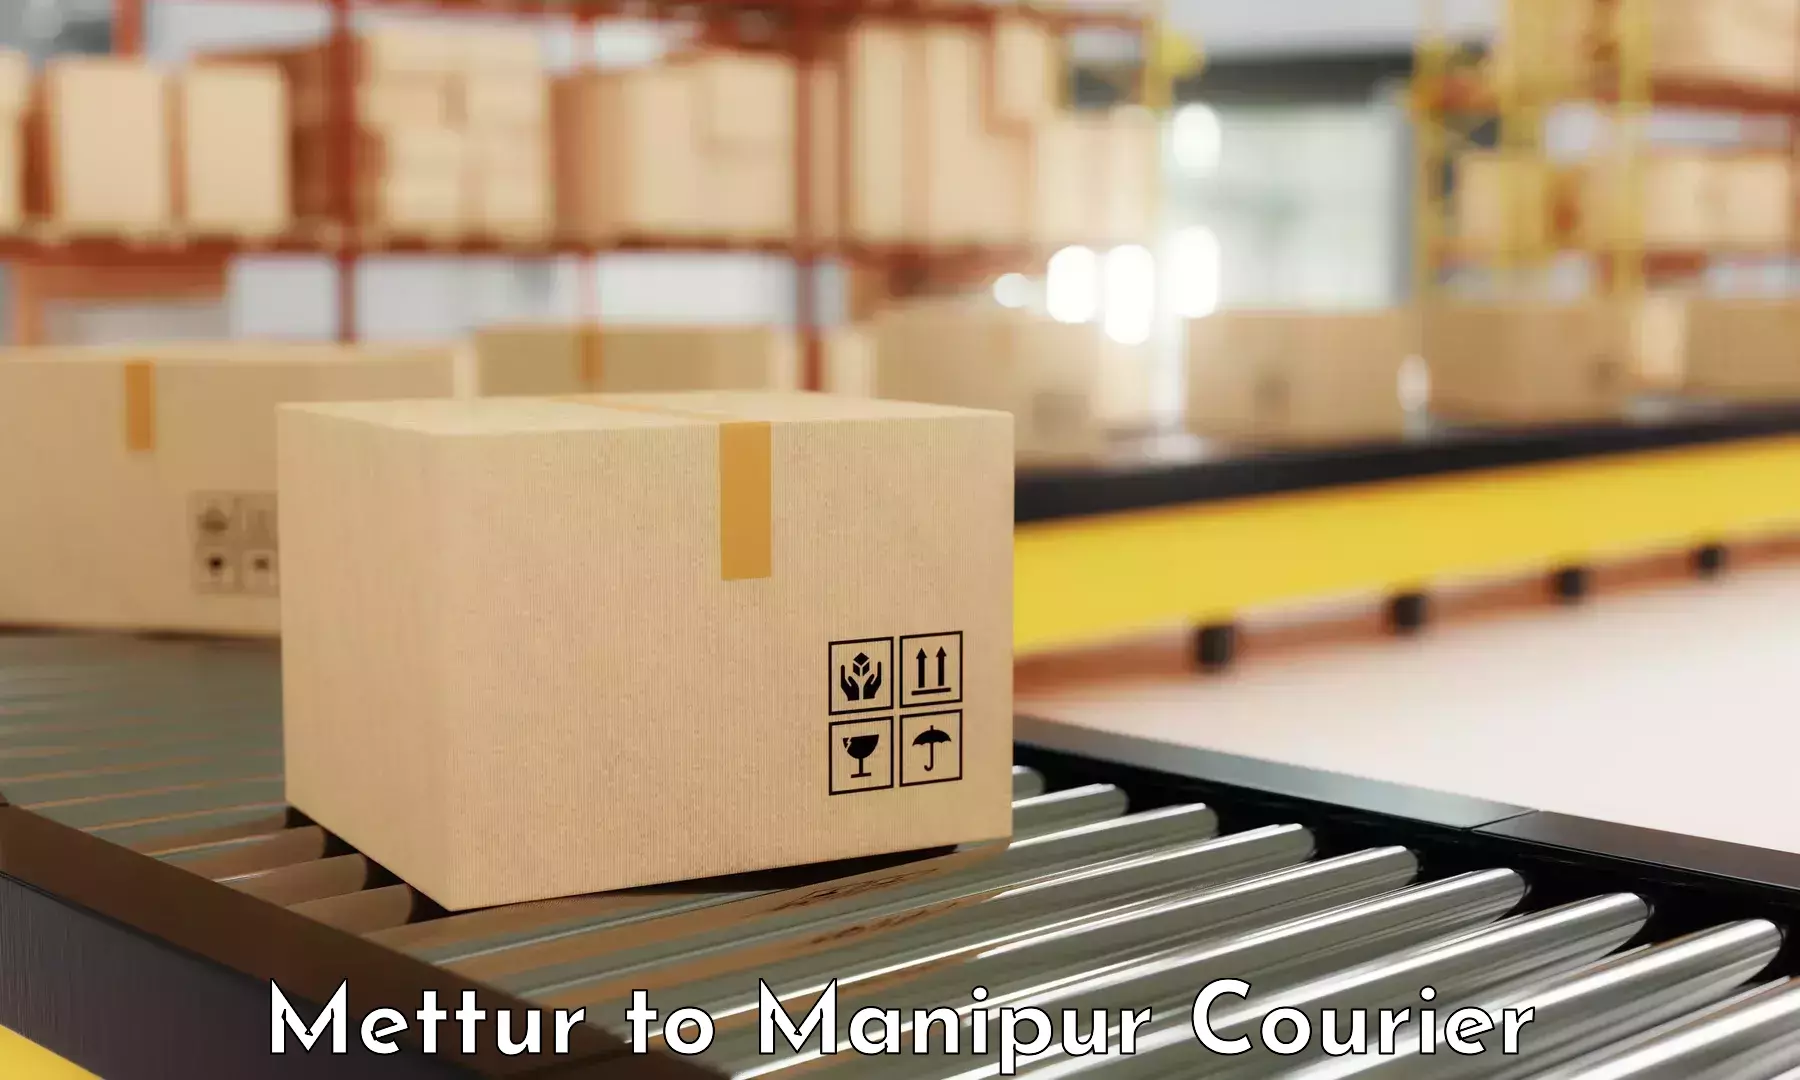 Nationwide courier service Mettur to Churachandpur